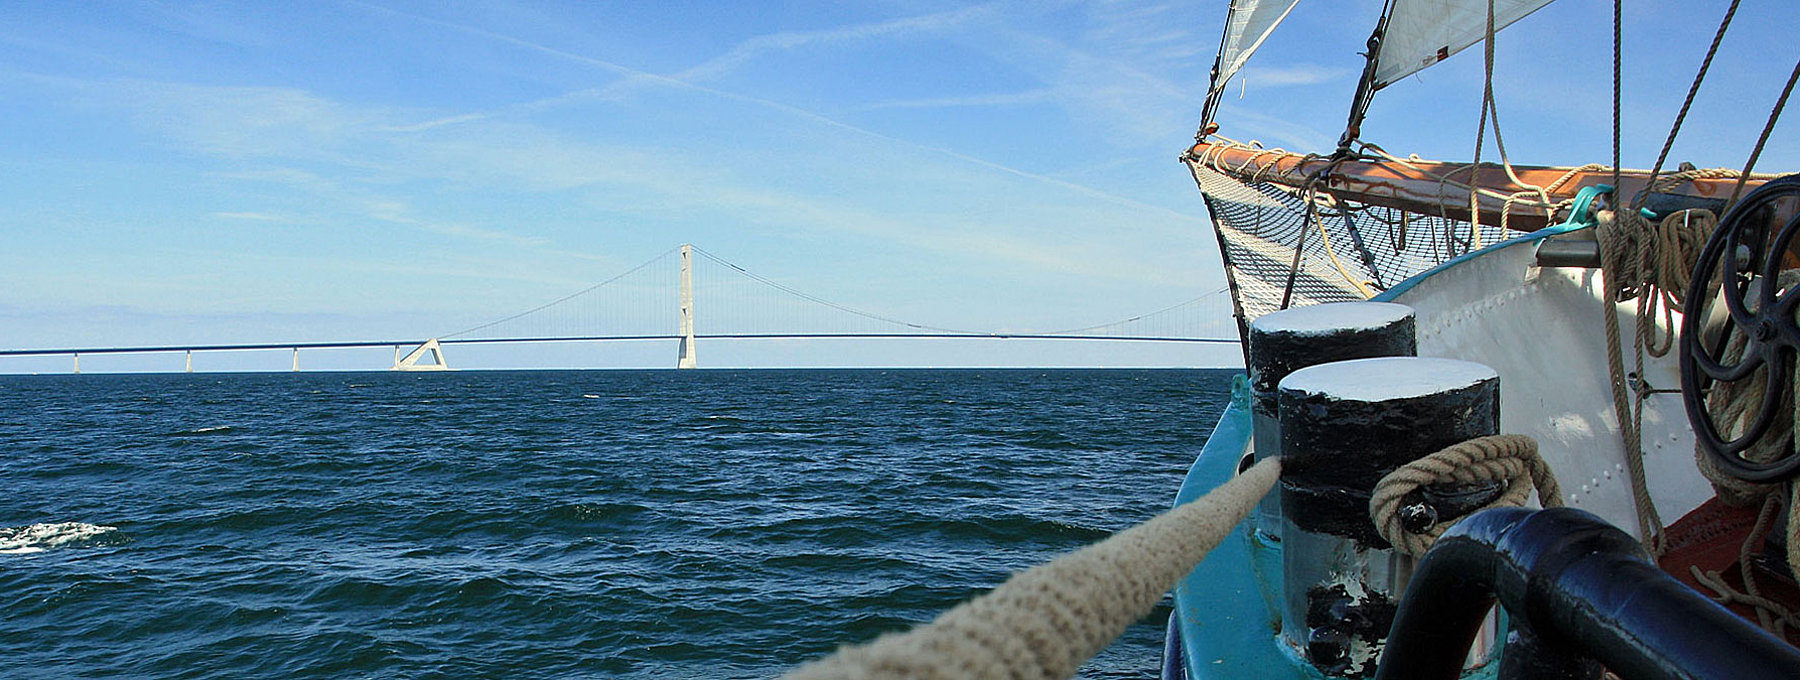 Schiffspitze mit Mast fährt auf eine Brücke zu